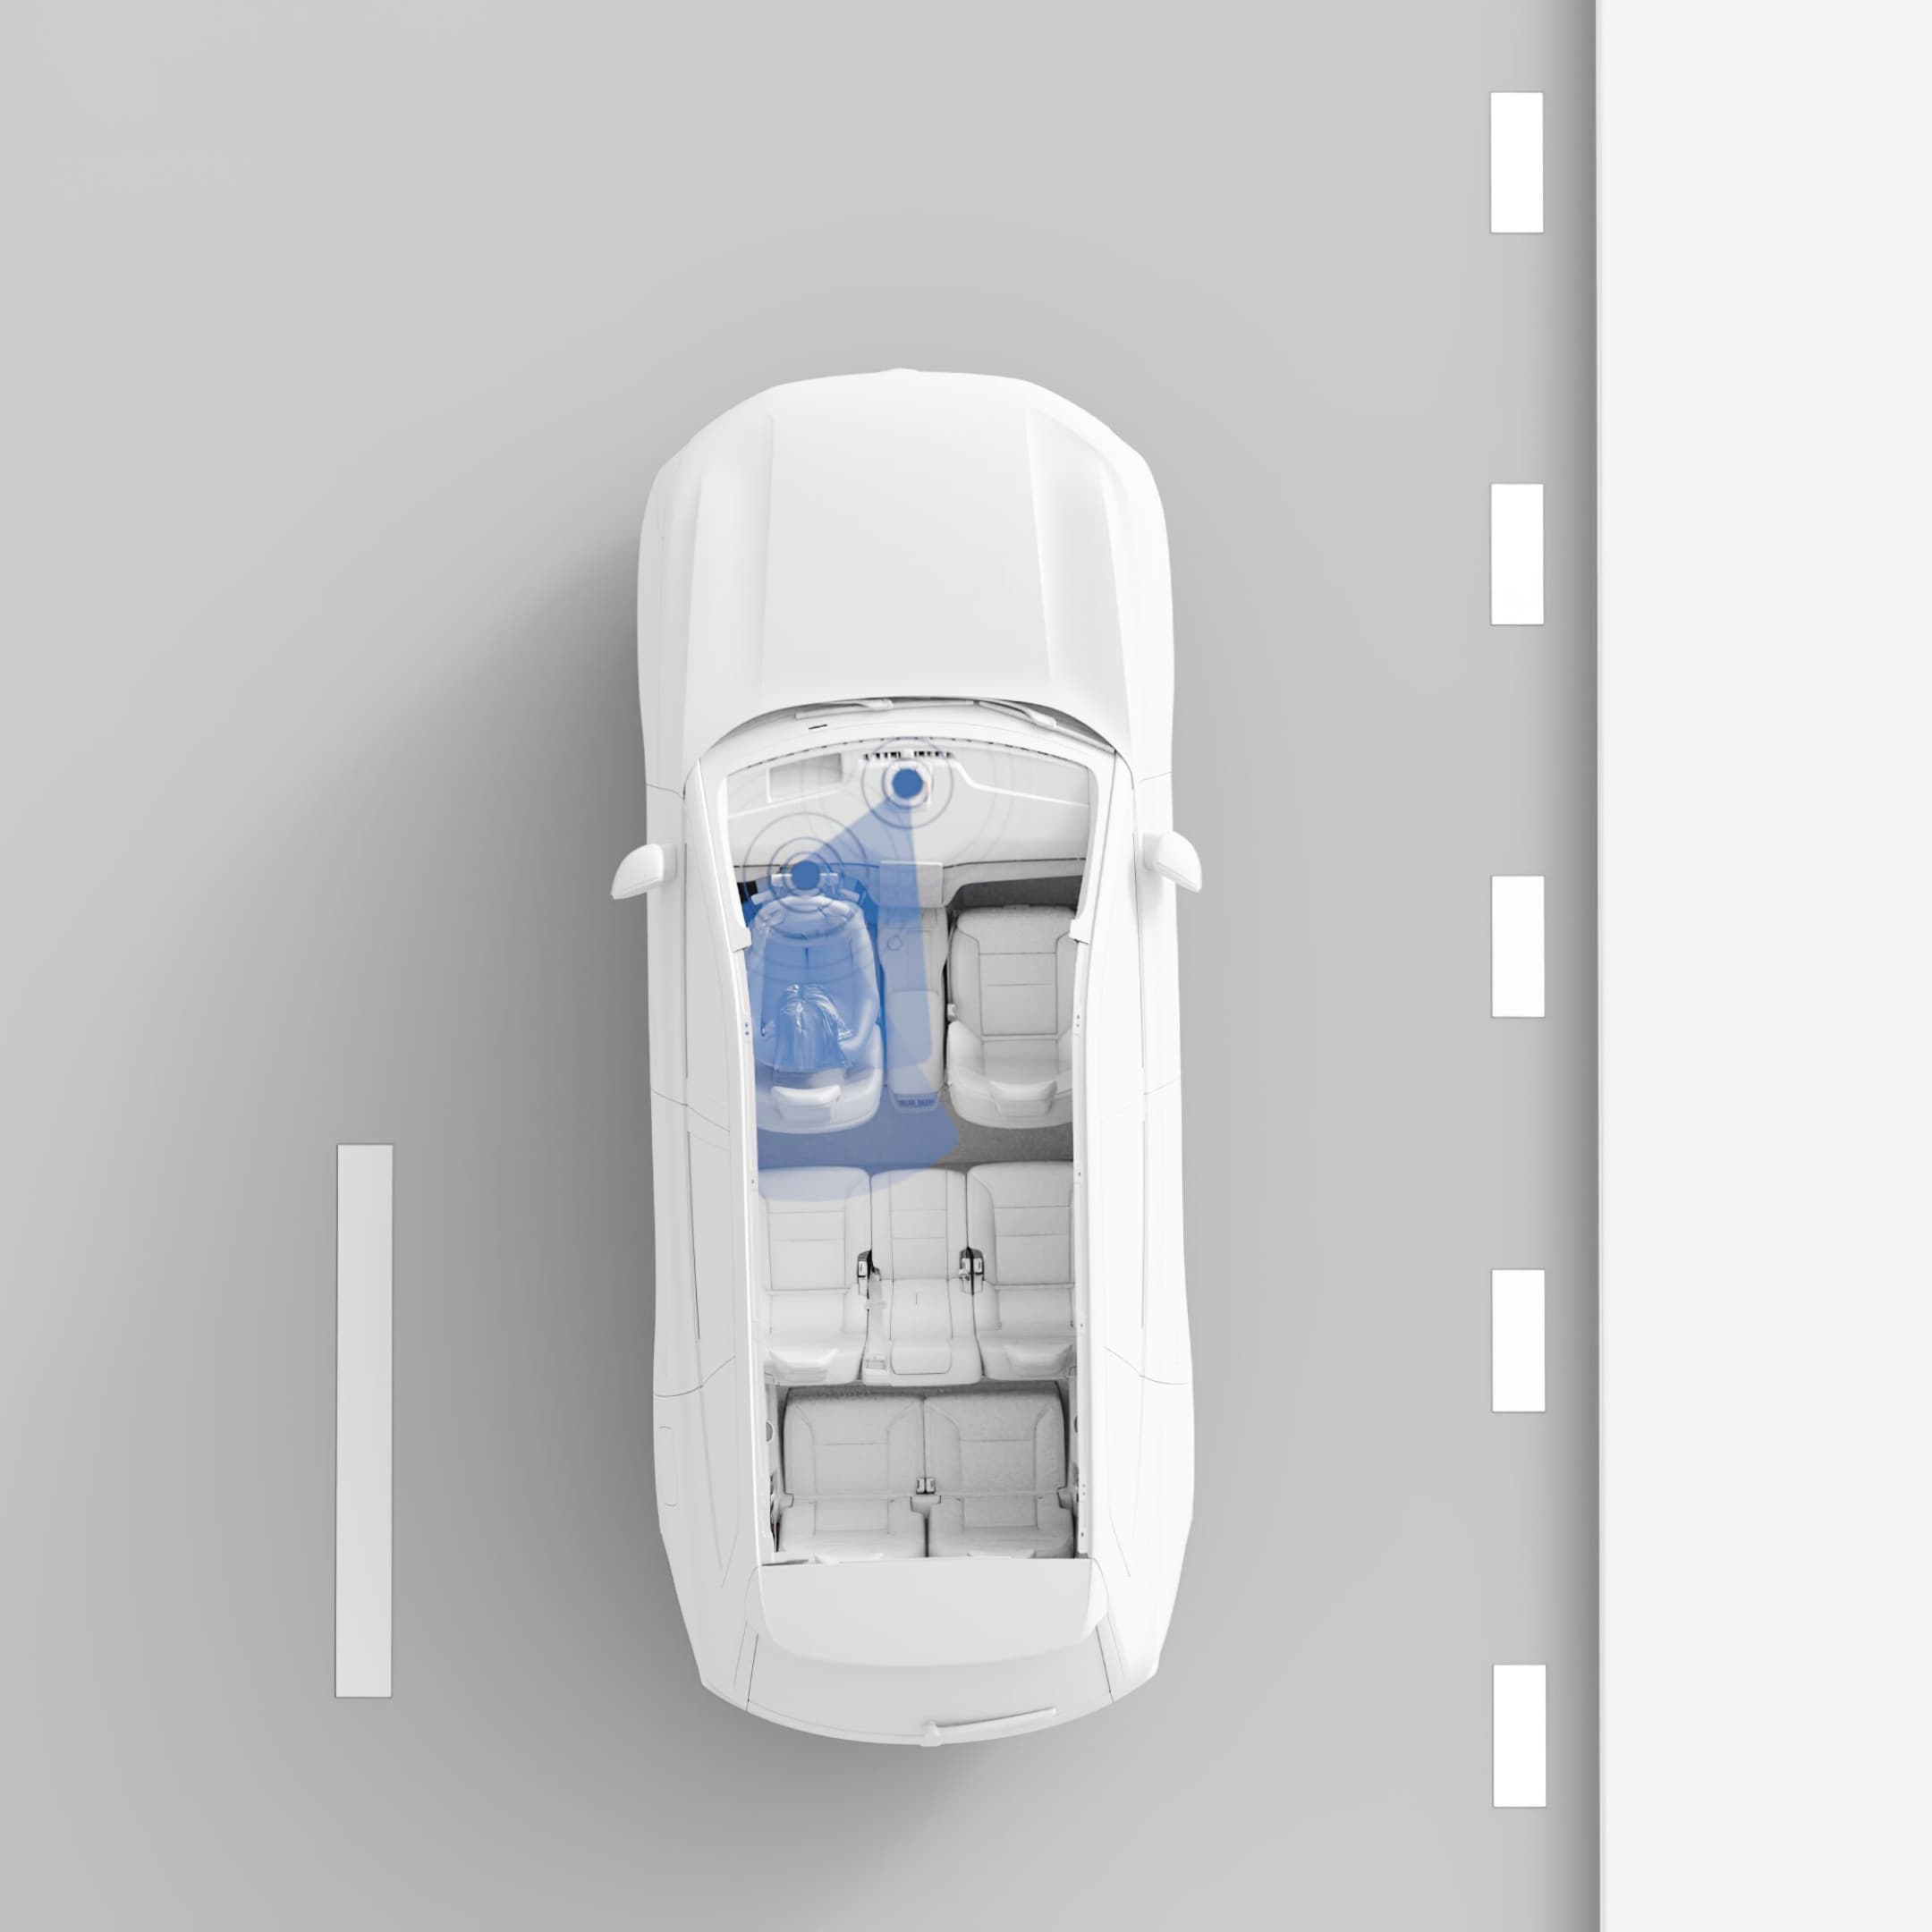 Një pamje nga lart e EX90. Sensorët dhe kamerat të cilat kuptojnë drejtimin e automjetit, monitorojnë shoferin.